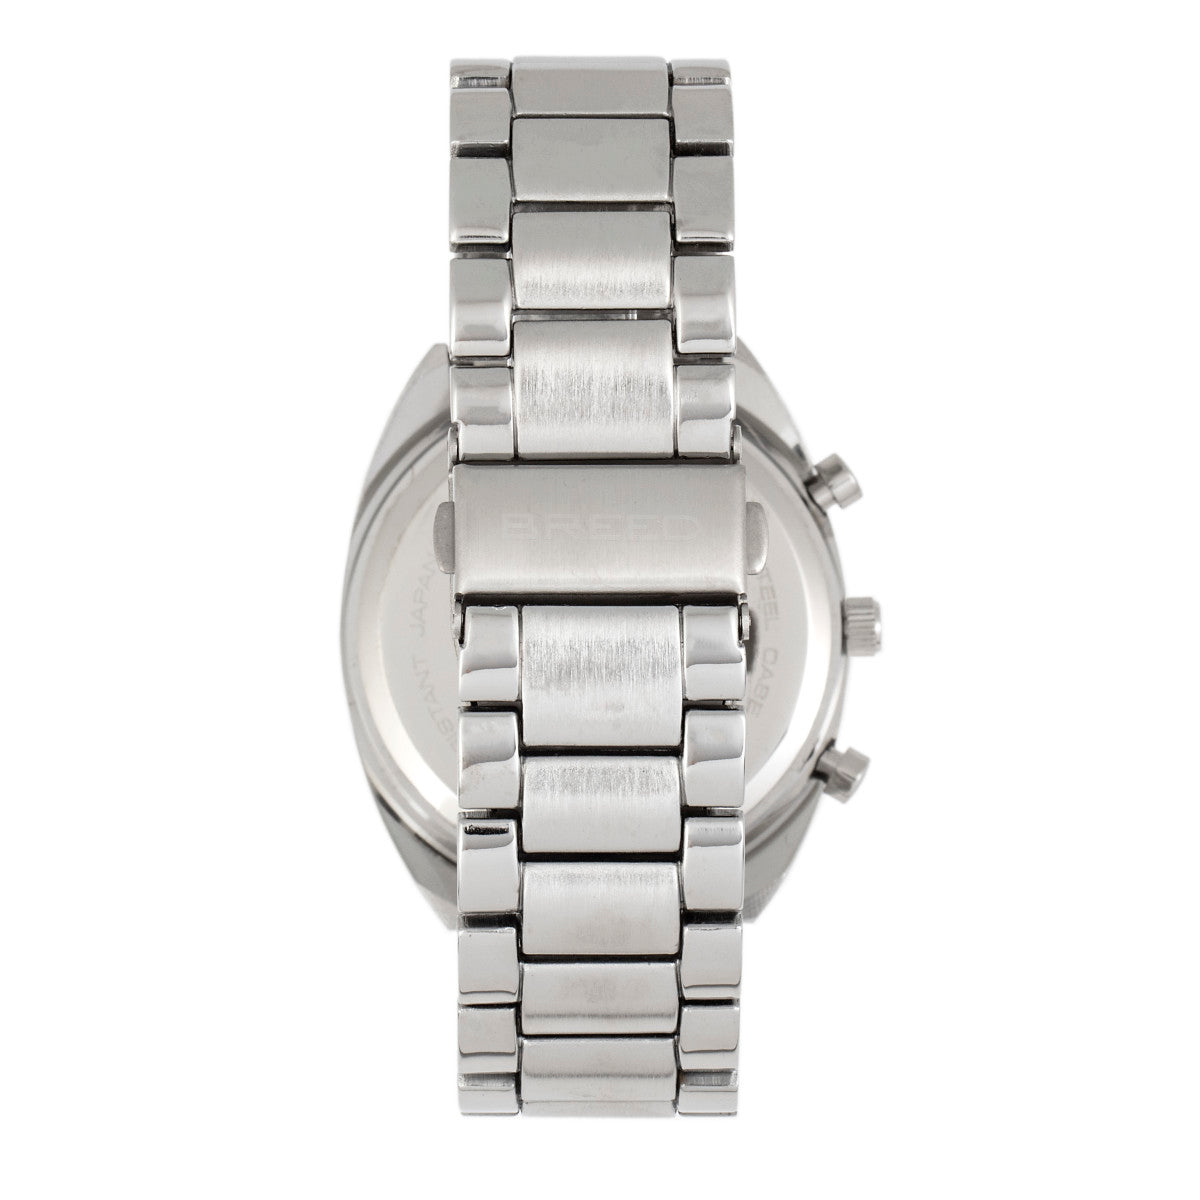 Breed Racer Chronograph Bracelet Watch w/Date - Silver/Blue - BRD8502